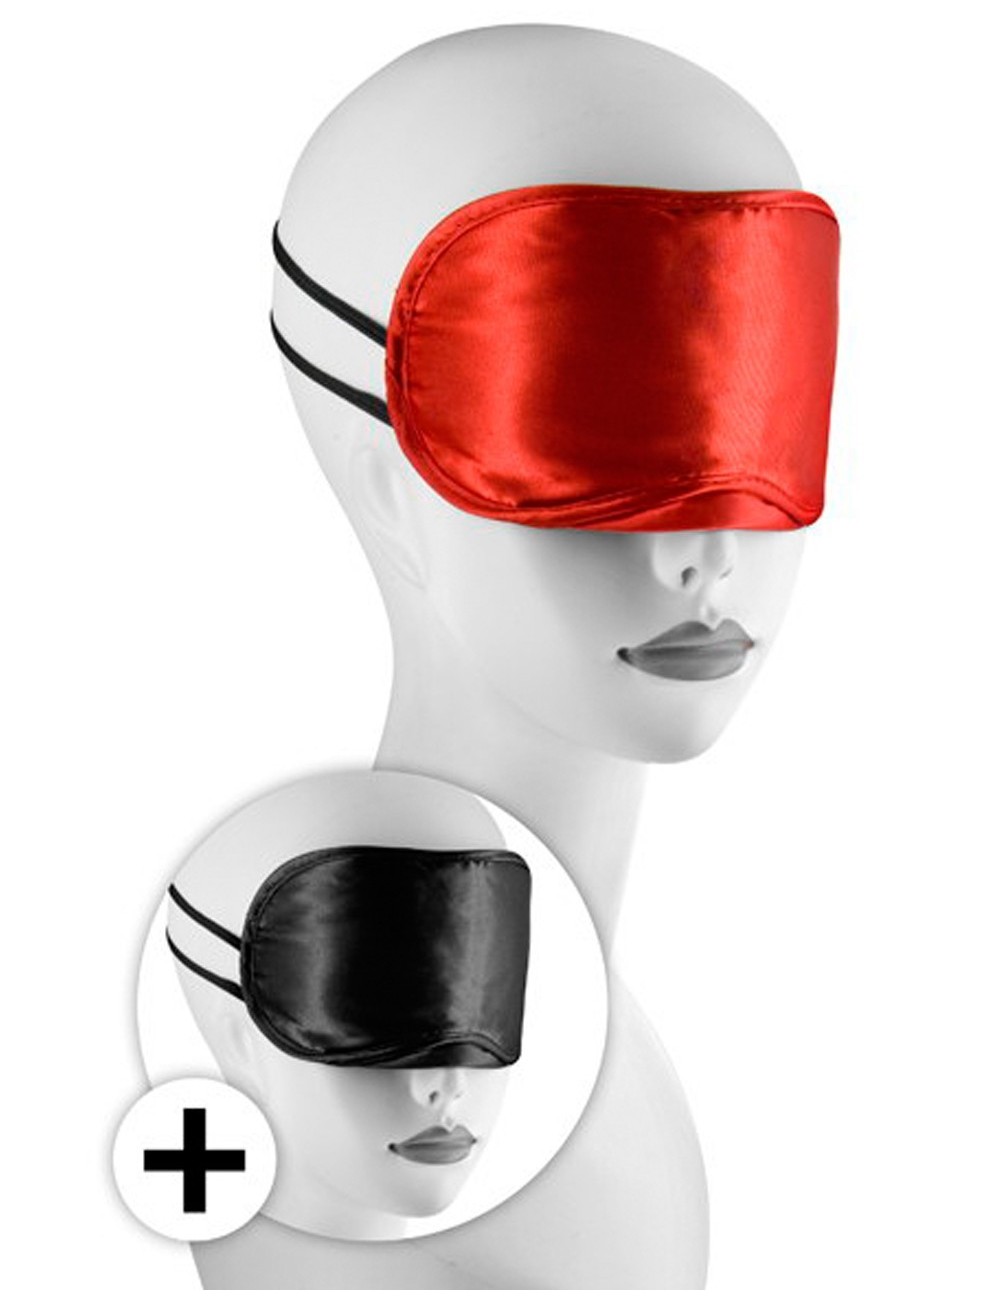 Sextoys - Masques, liens et menottes - Large masque satin lot de 2 rouge et noir - CC570038 - Sweet Caress